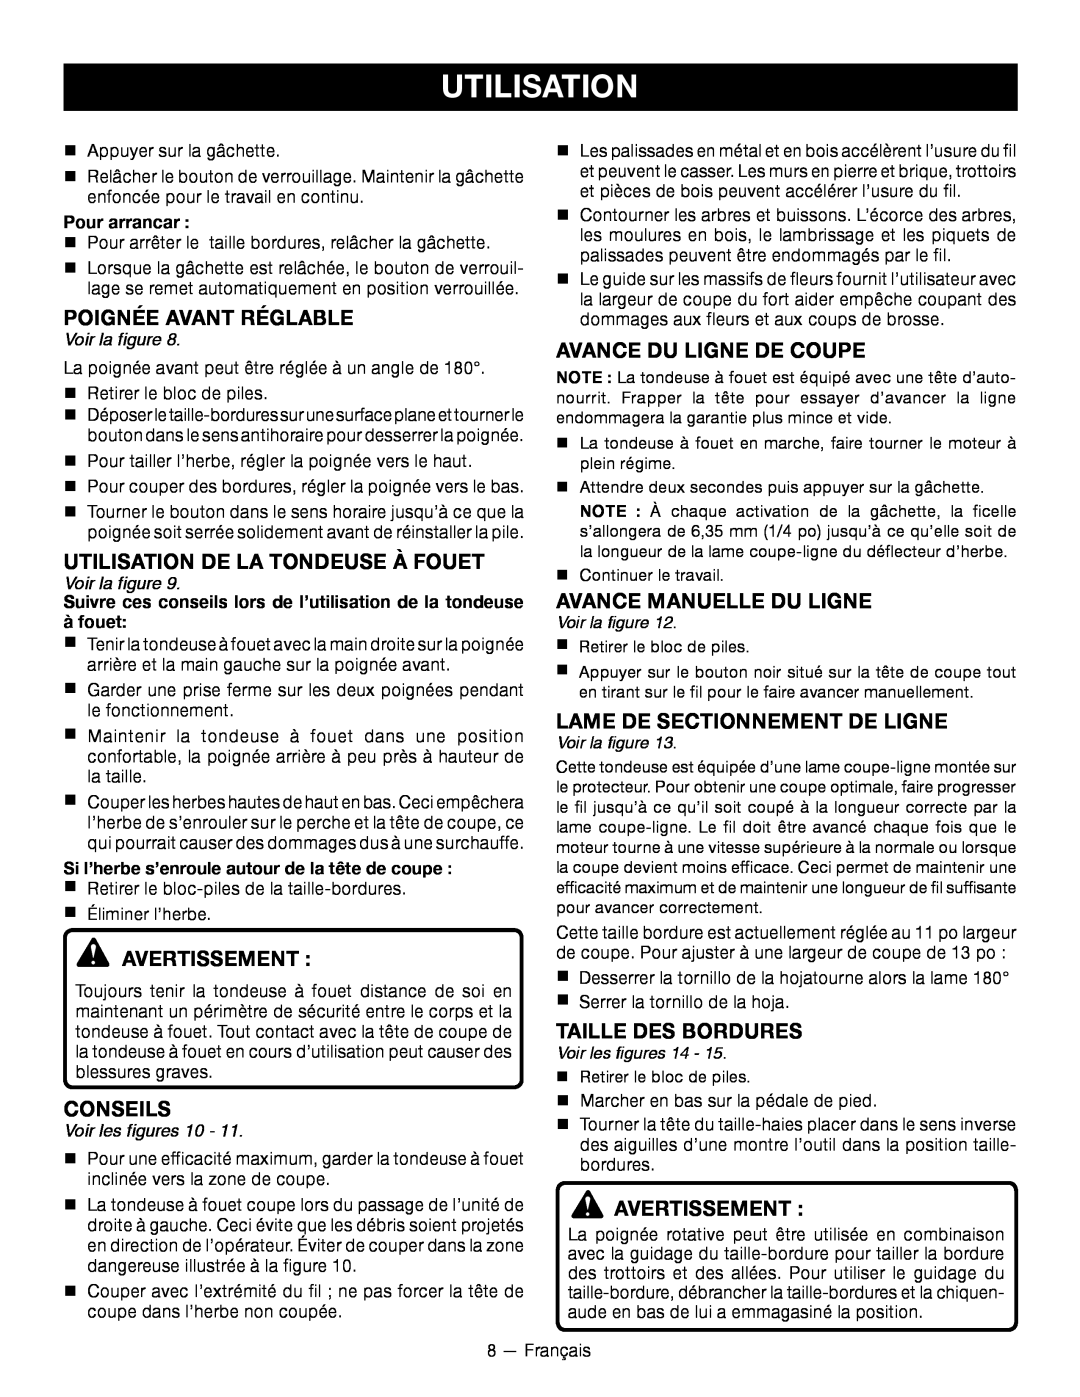 Ryobi RY24200 Utilisation De La Tondeuse À Fouet, Conseils, AVANCE DU ligne DE COUPE, AVANCE MANUELLE DU ligne 